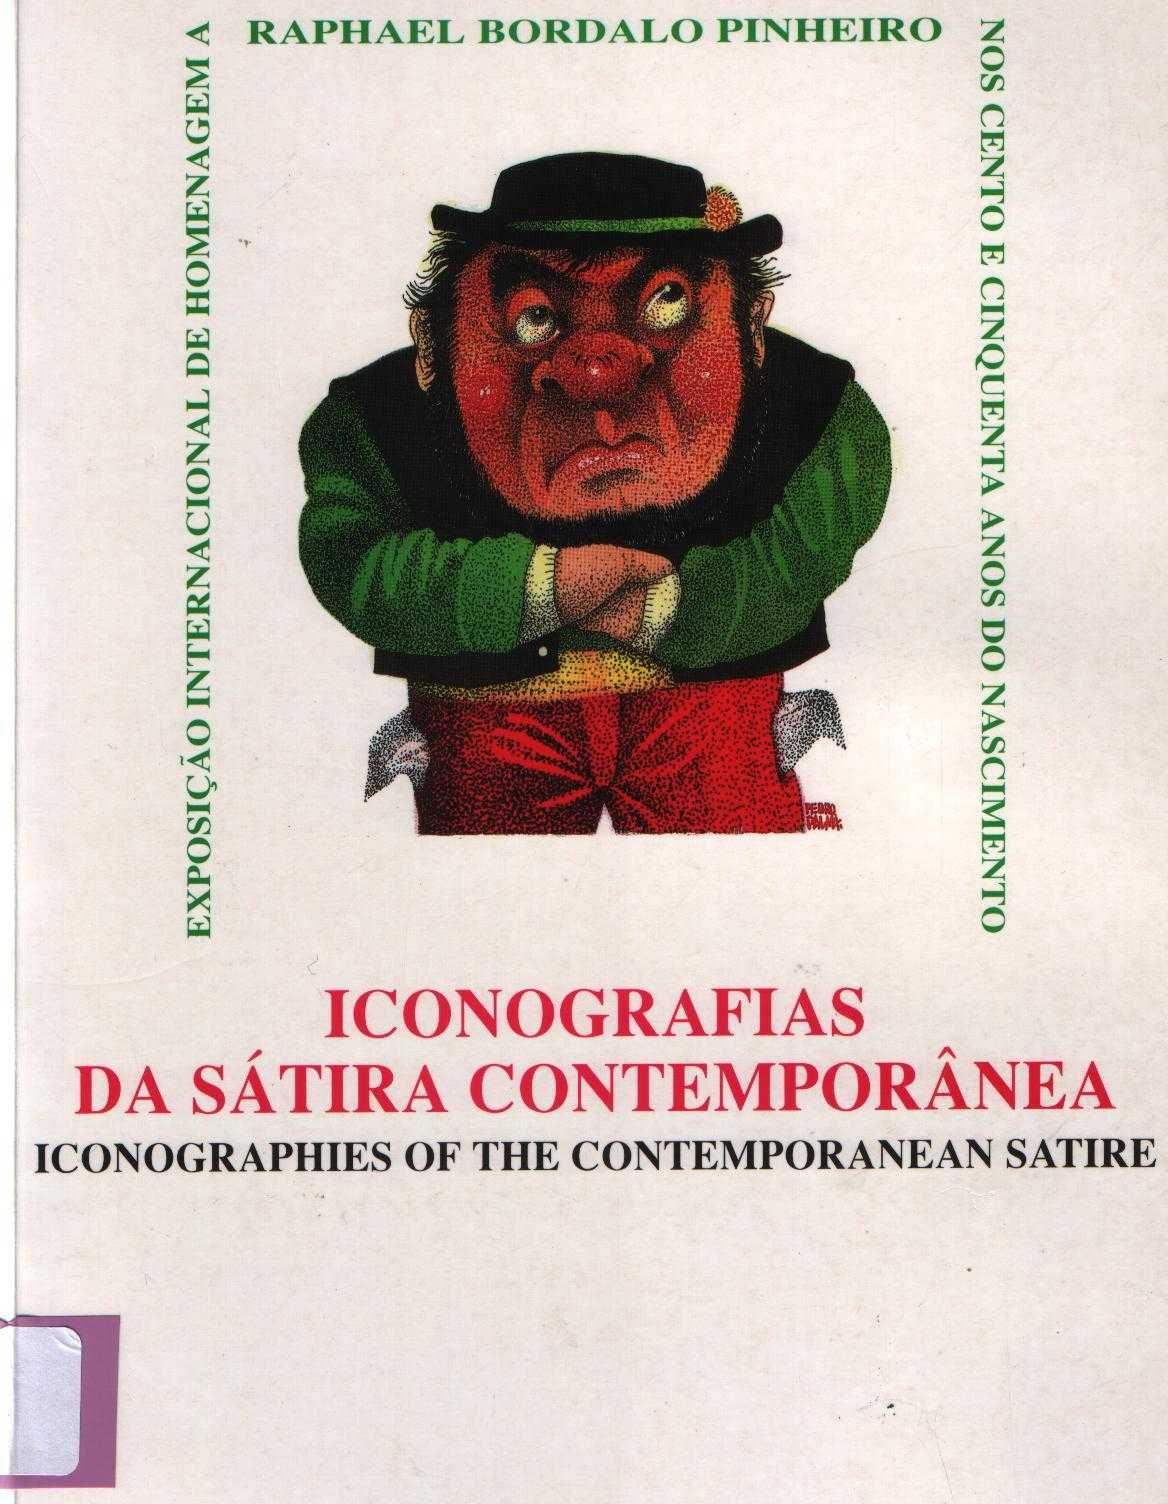 Iconografias da Sátira Contemporânea - Raphael Bordalo Pinheiro